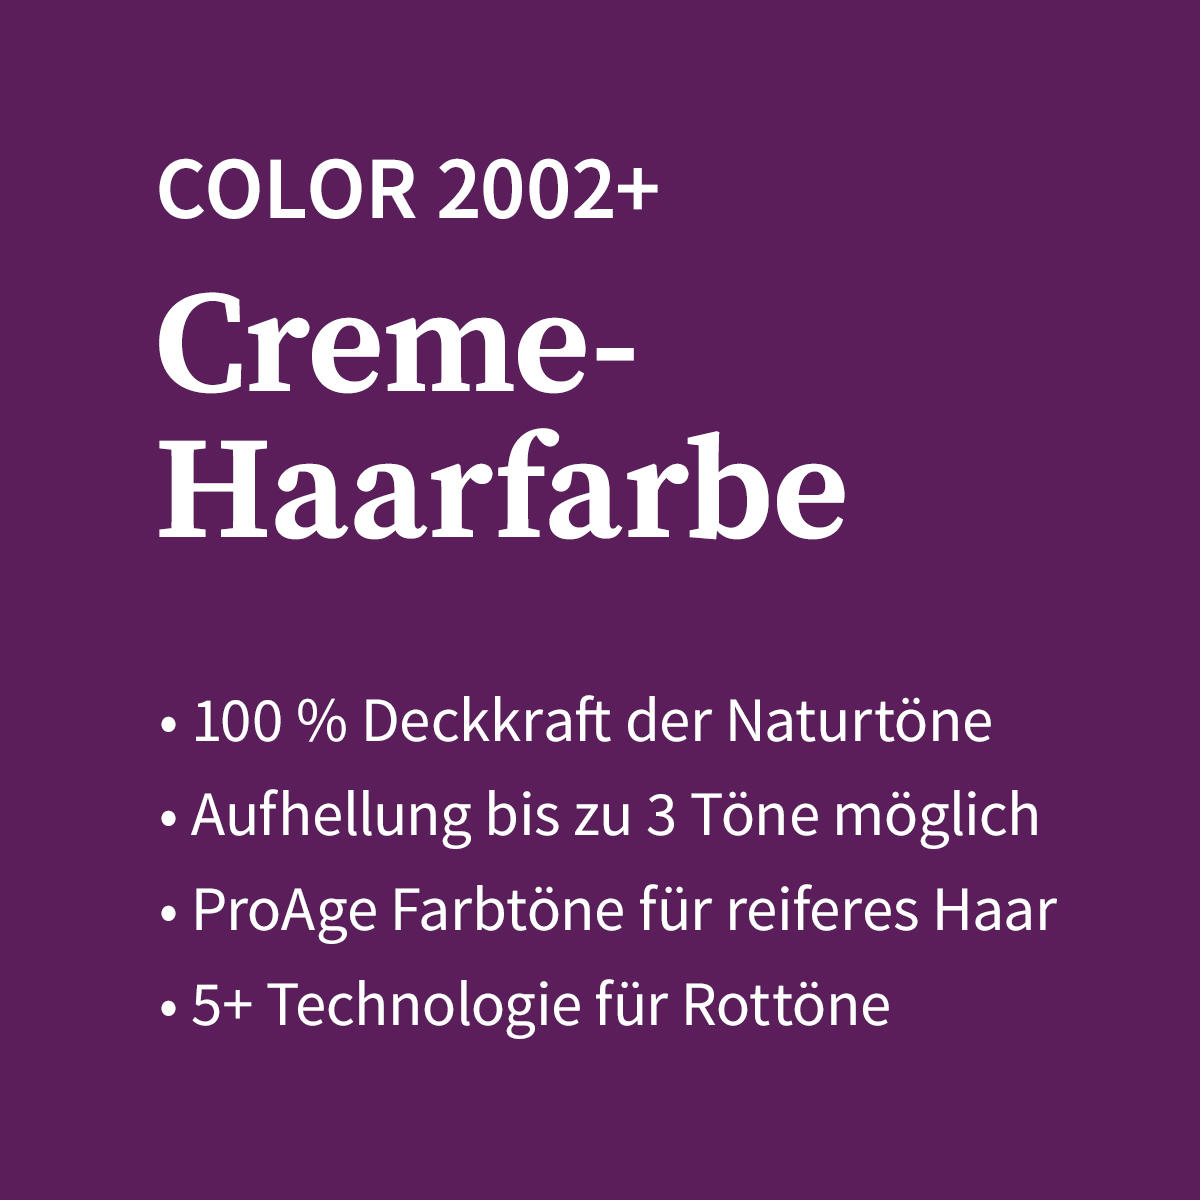 Basler Color 2002+ Cremehaarfarbe 4/7 mittelbraun braun, Tube 60 ml - 4